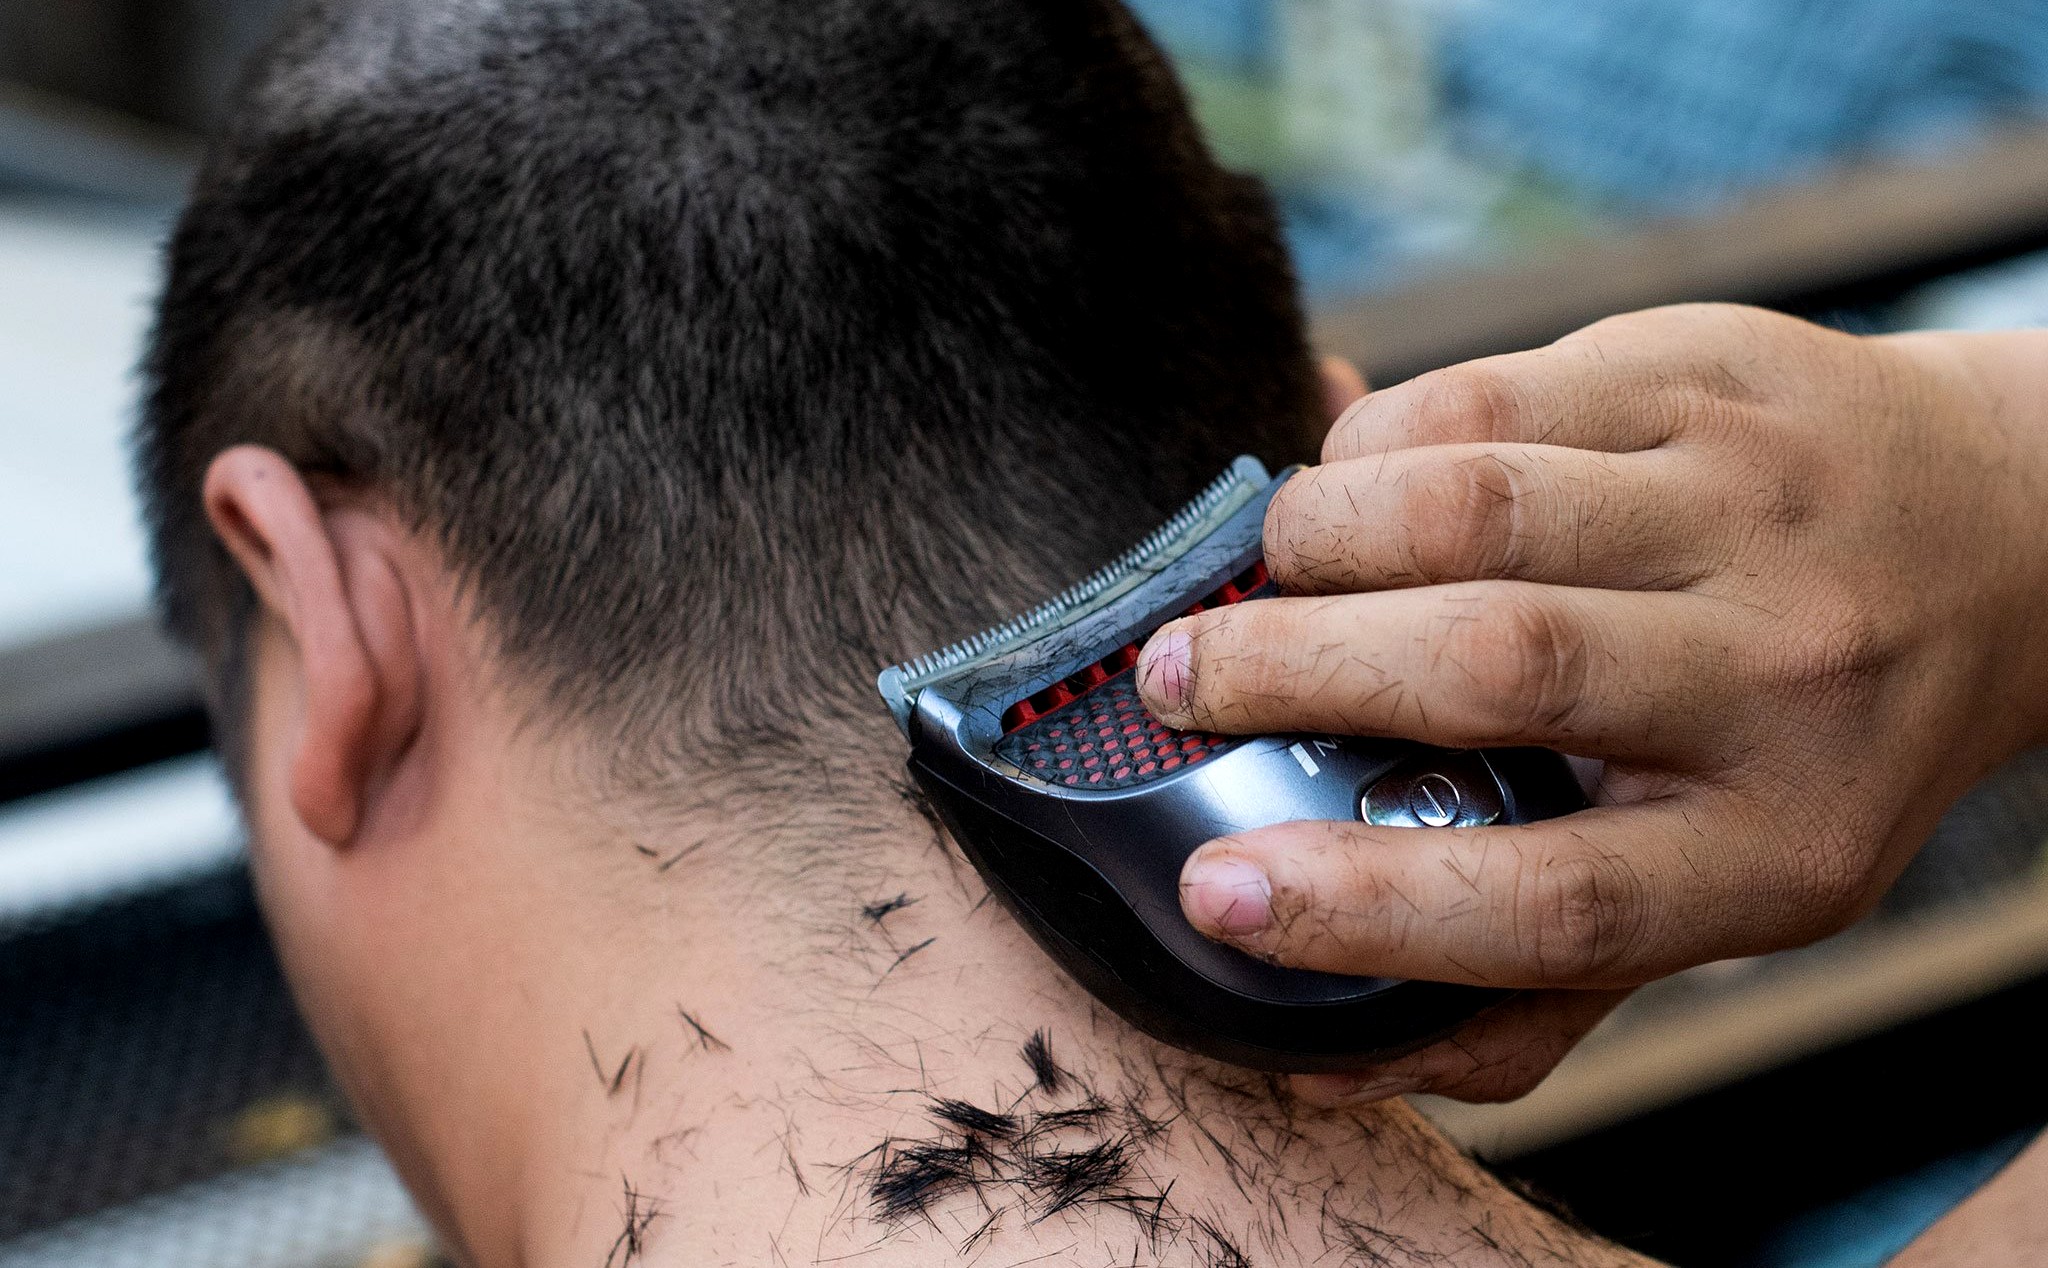 Hướng dẫn cách tự cắt tóc tại nhà bằng tông đơ [ĐƠN GIẢN + DỄ LÀM]